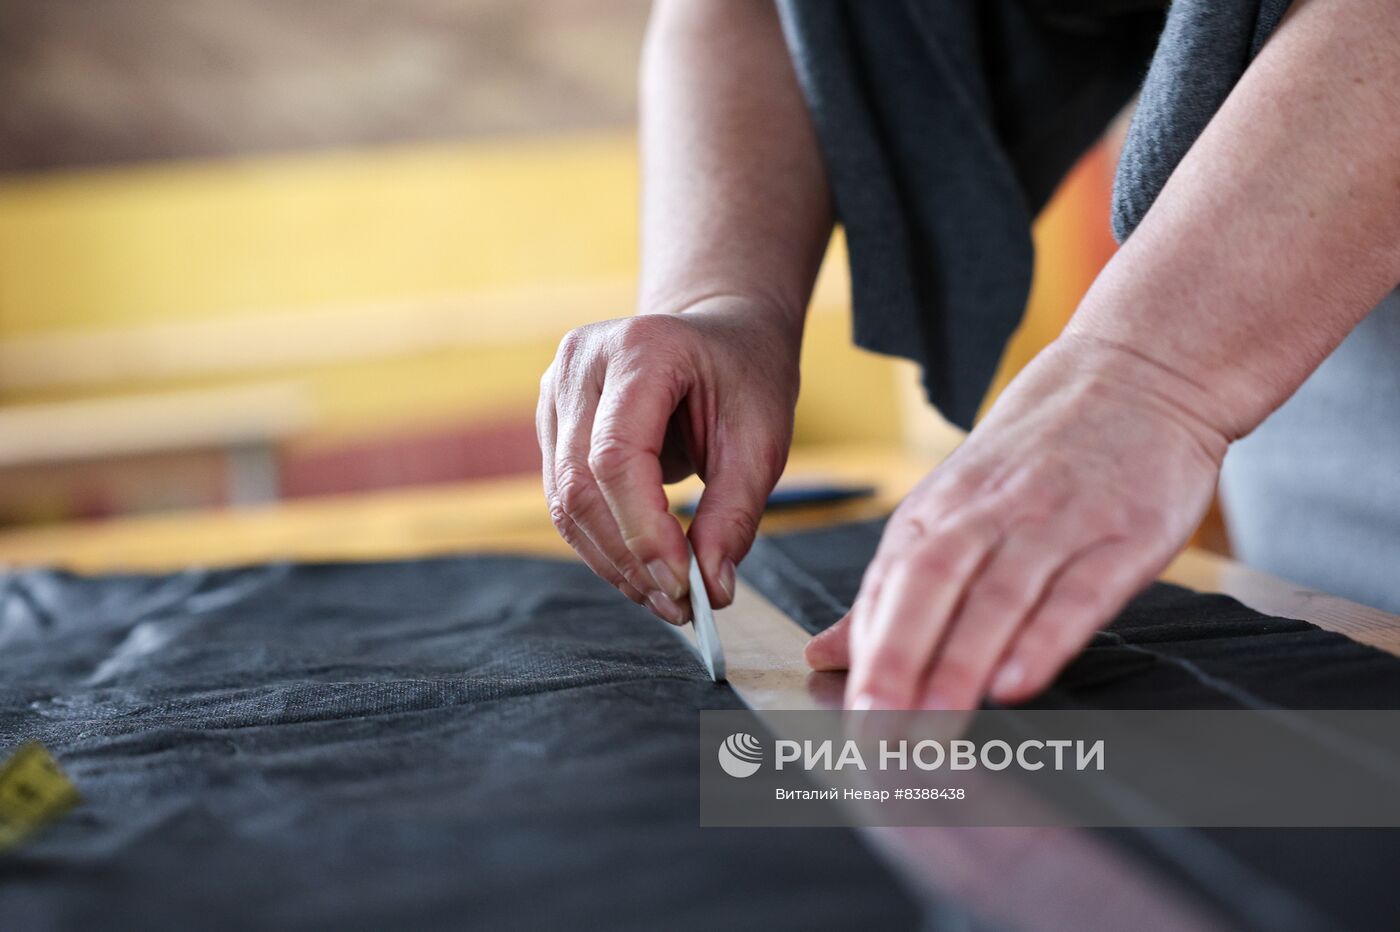 Пошив маскировочных сетей в храме Калининграда 